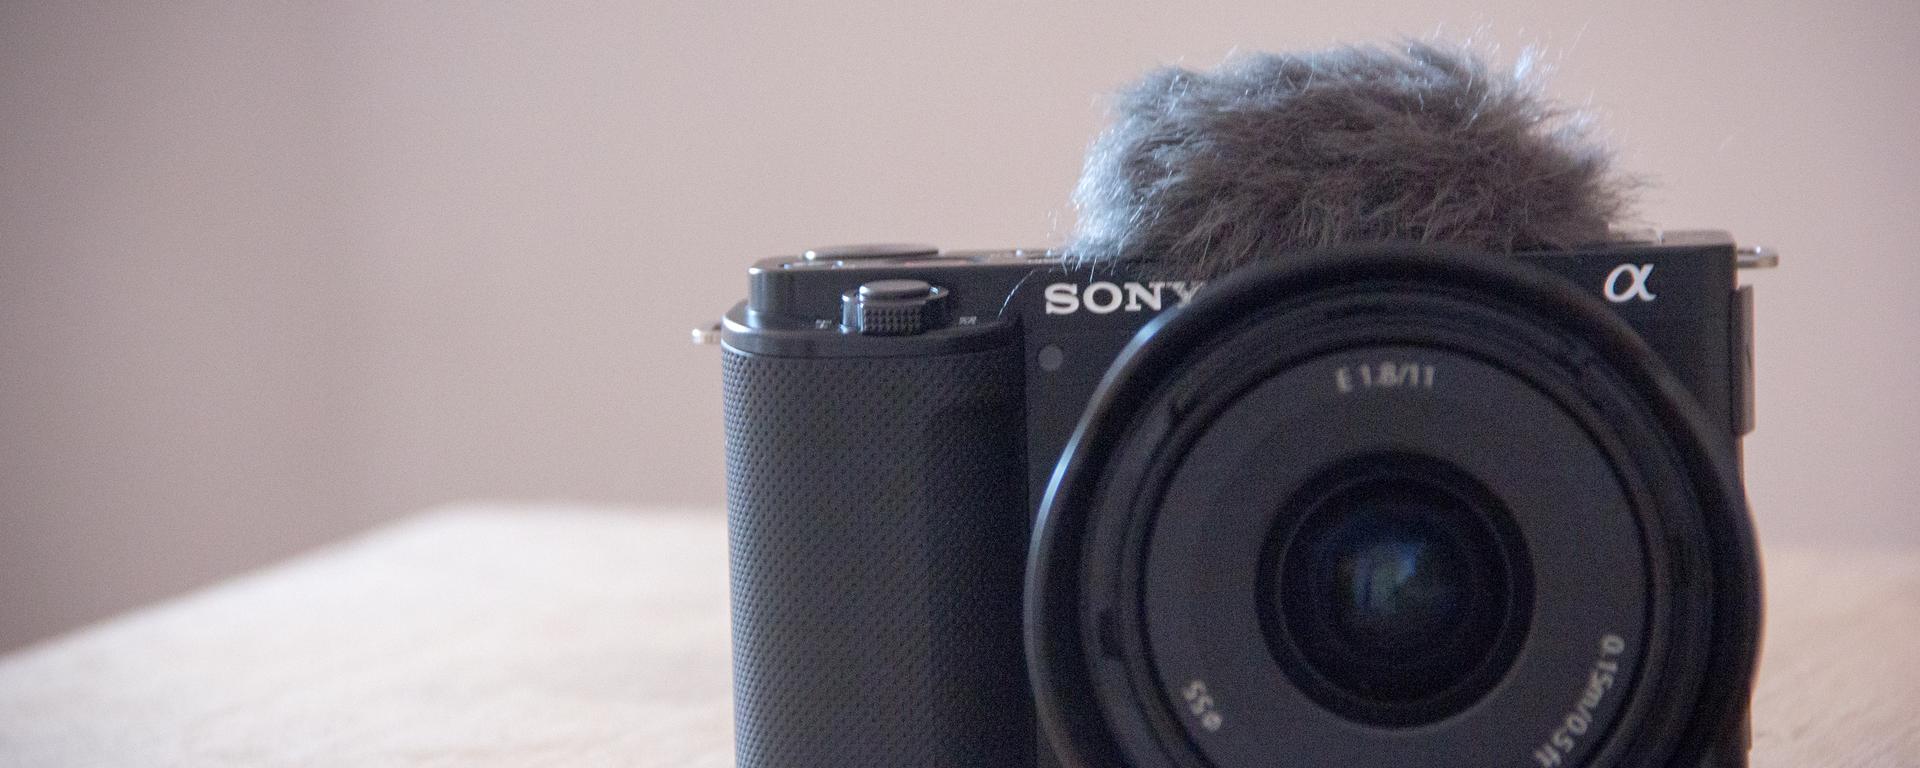 Sony ZV-E10 - REVIEW: sometimos a prueba la cámara pensada para vbloggers desde su diseño